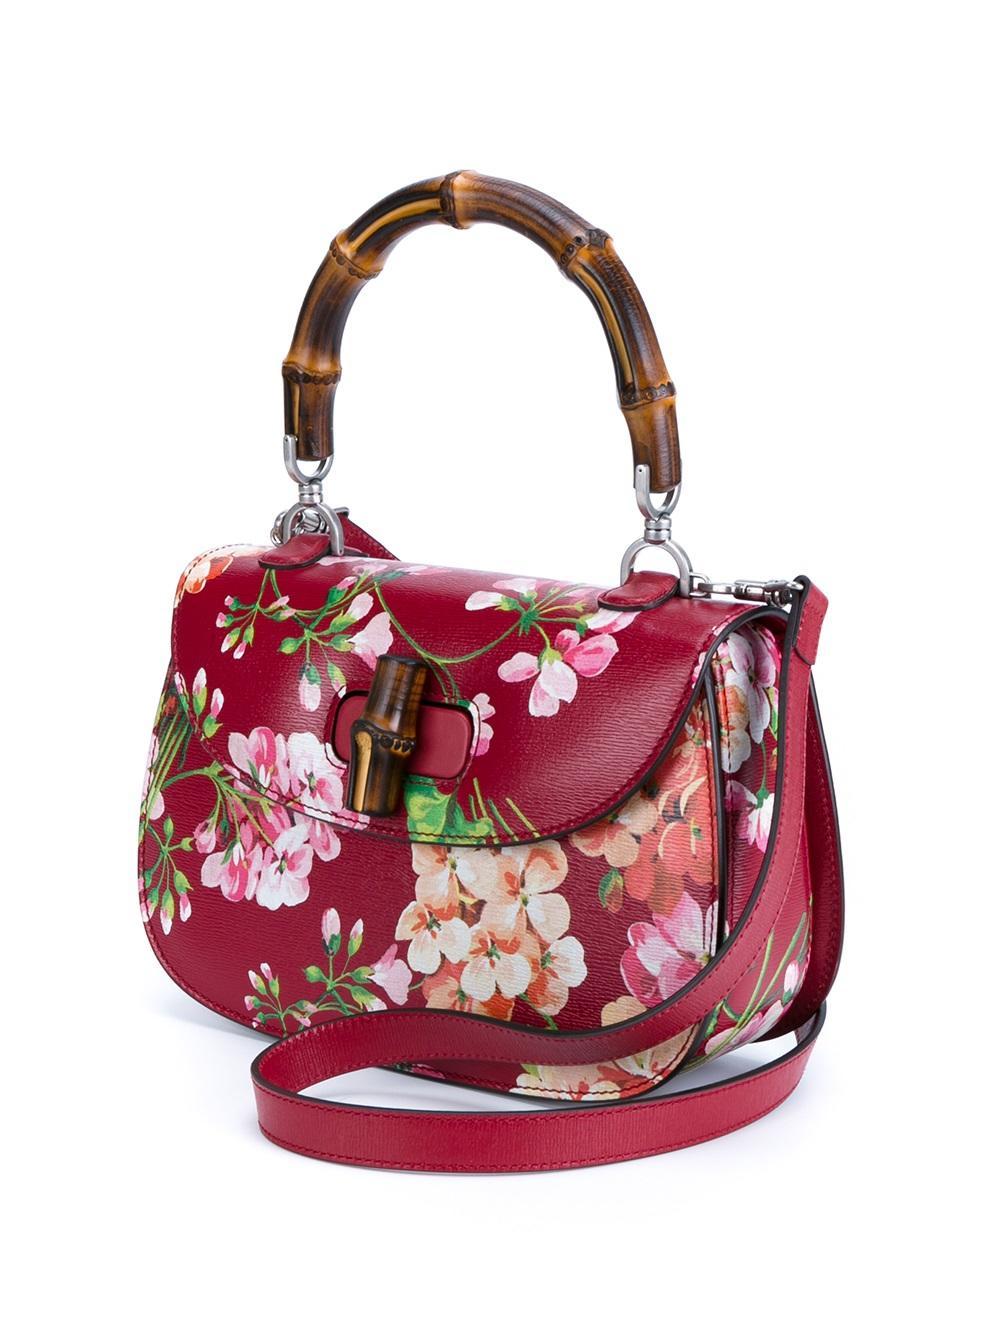 Lyst - Gucci Floral Print Shoulder Bag in Red